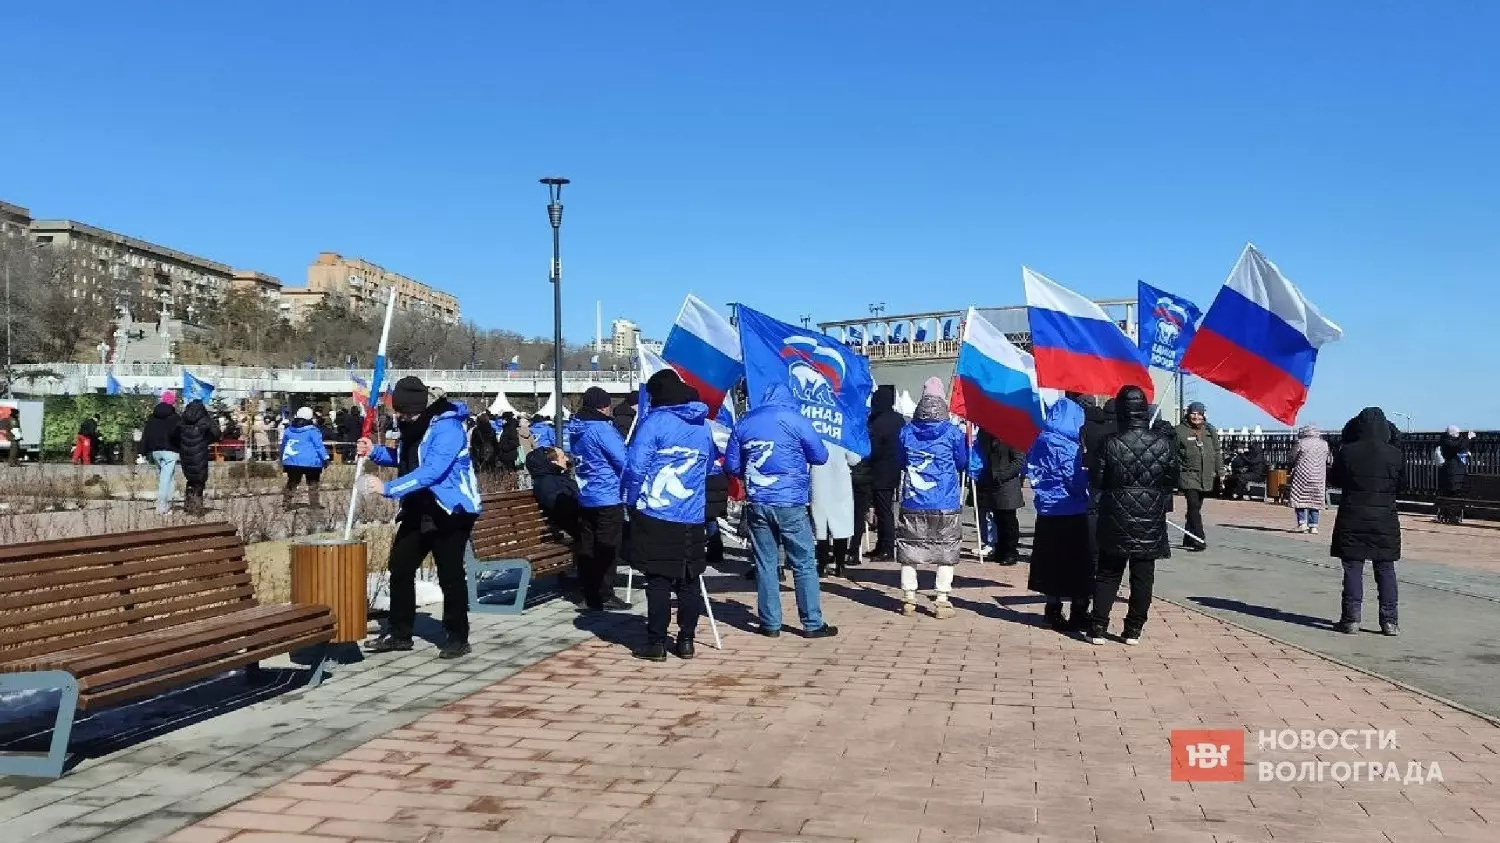 Российские флаги, Росгвардия, полиция — всё готово к началу концерта